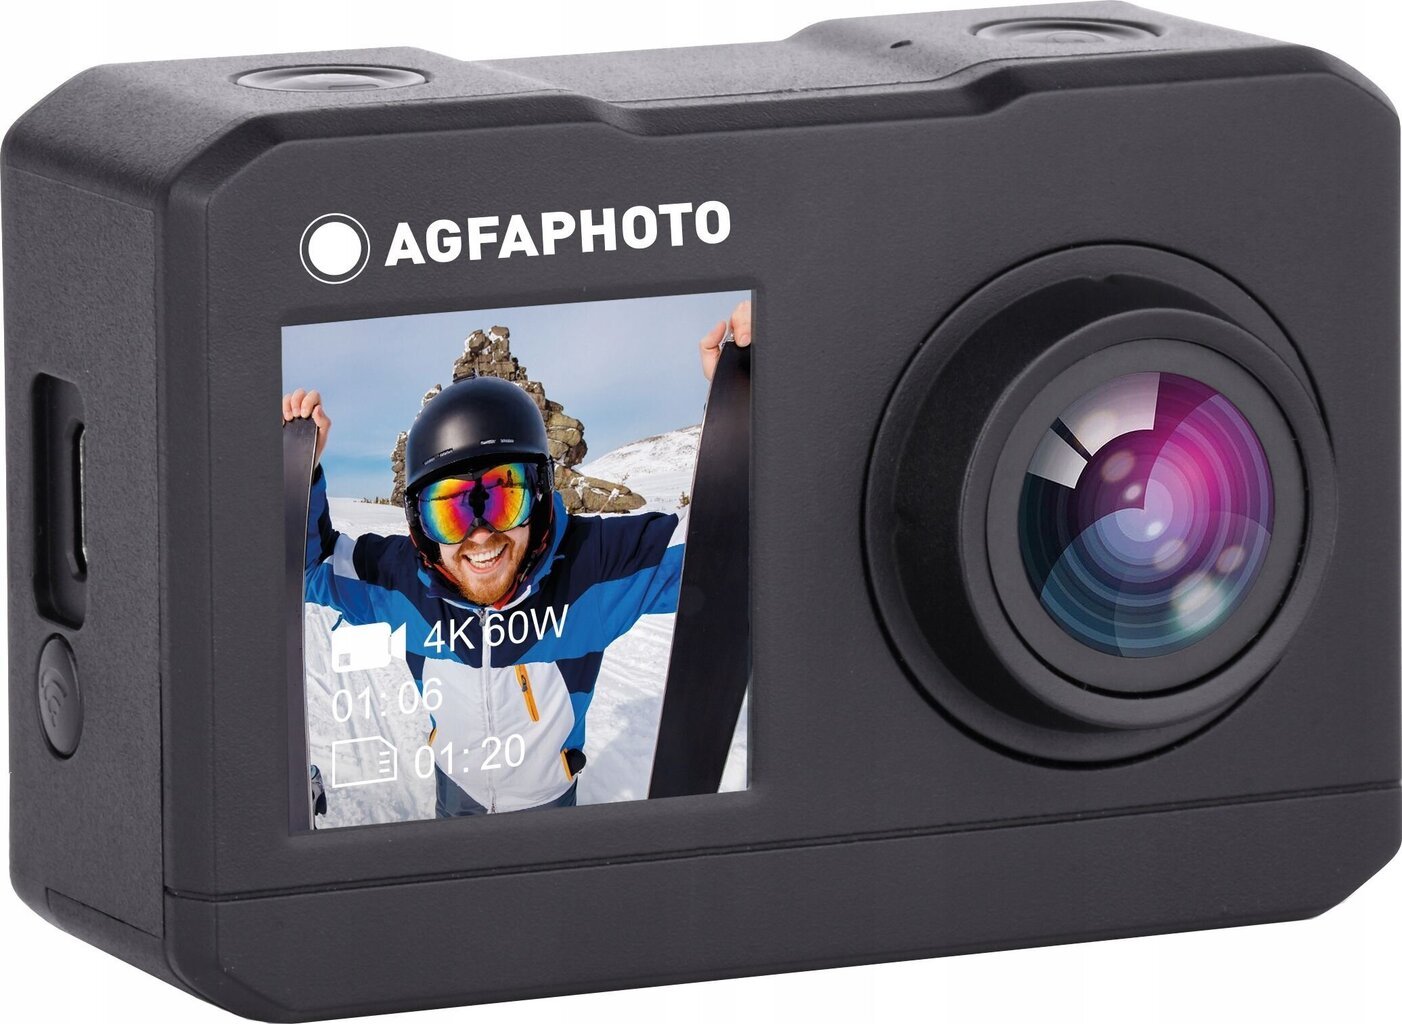 AgfaPhoto AC7000, black kaina ir informacija | Veiksmo ir laisvalaikio kameros | pigu.lt